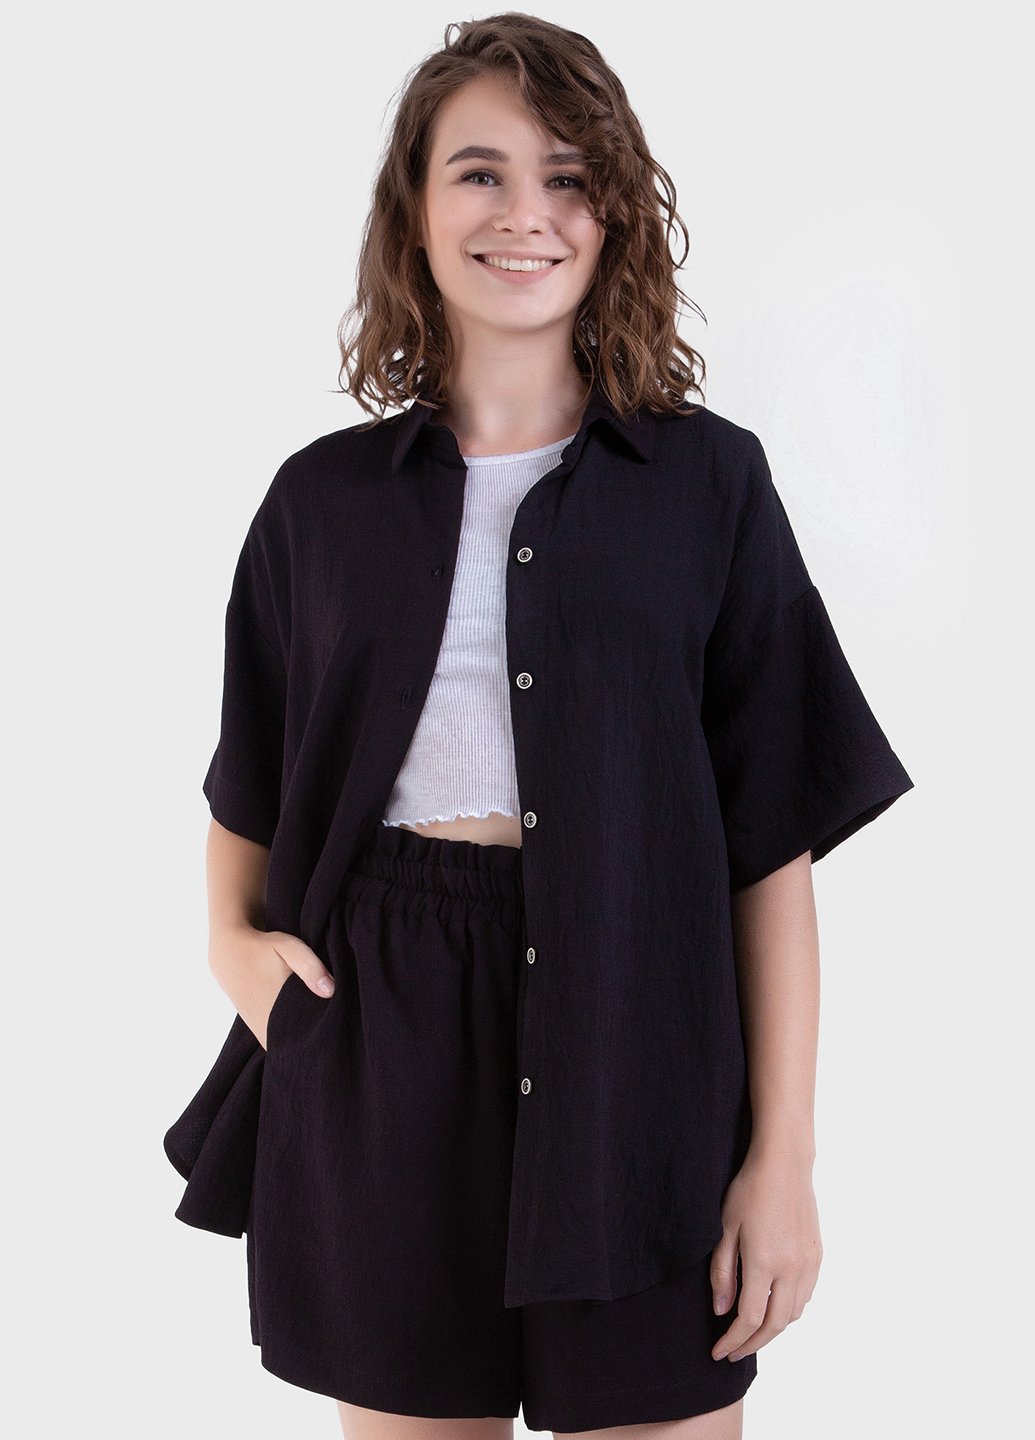 Купить Оверсайз рубашка женская черного цвета из льна-жатки Merlini Авеллино 200000064, размер 42-44 в интернет-магазине